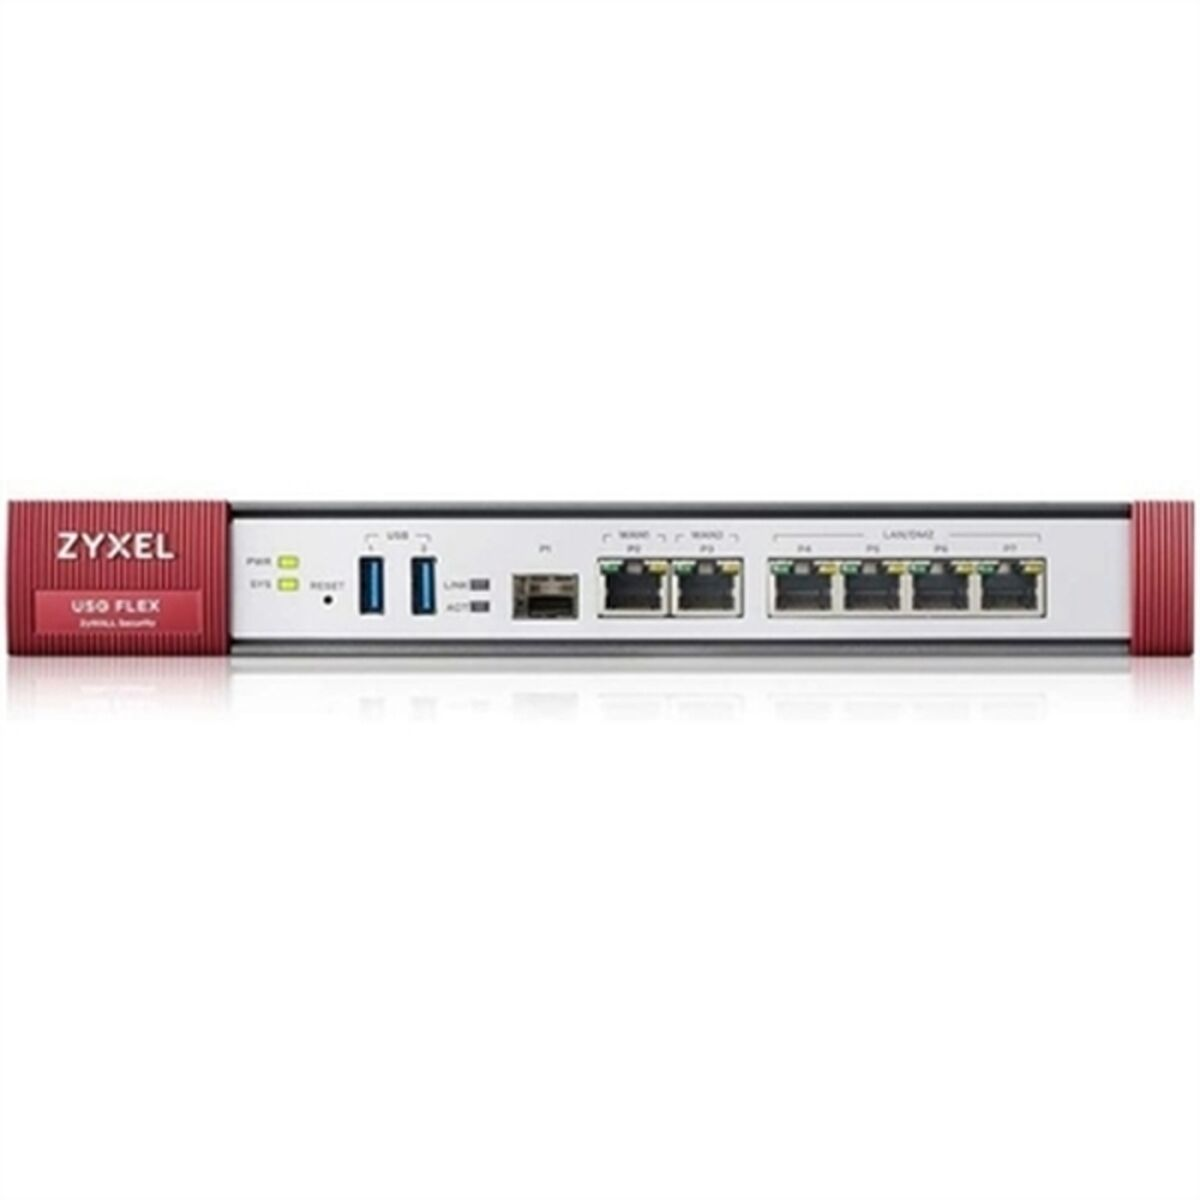 ZYXEL USGFLEX200-EU0102F Firewall